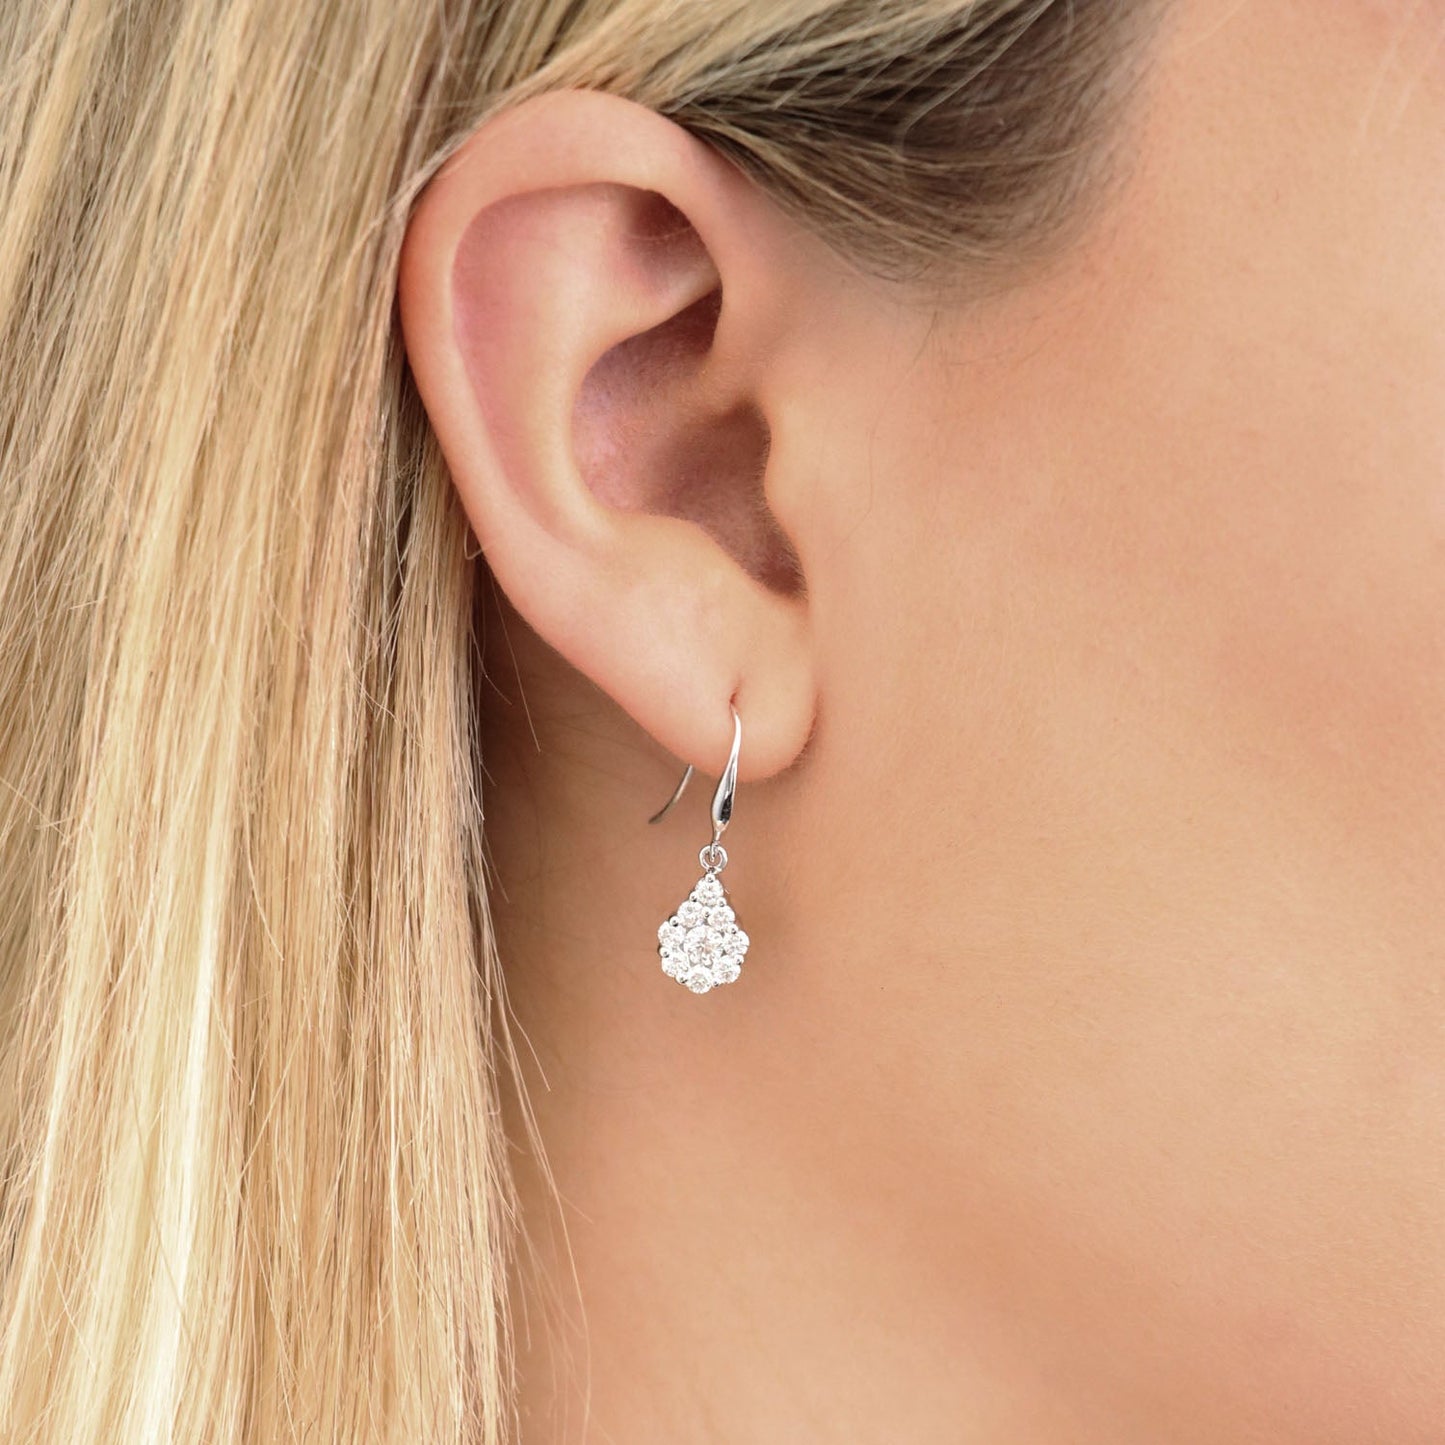 Tear Drop Hook Diamond Earrings with 1.00ct Diamonds in 9K White Gold - 9WTDSH100GH